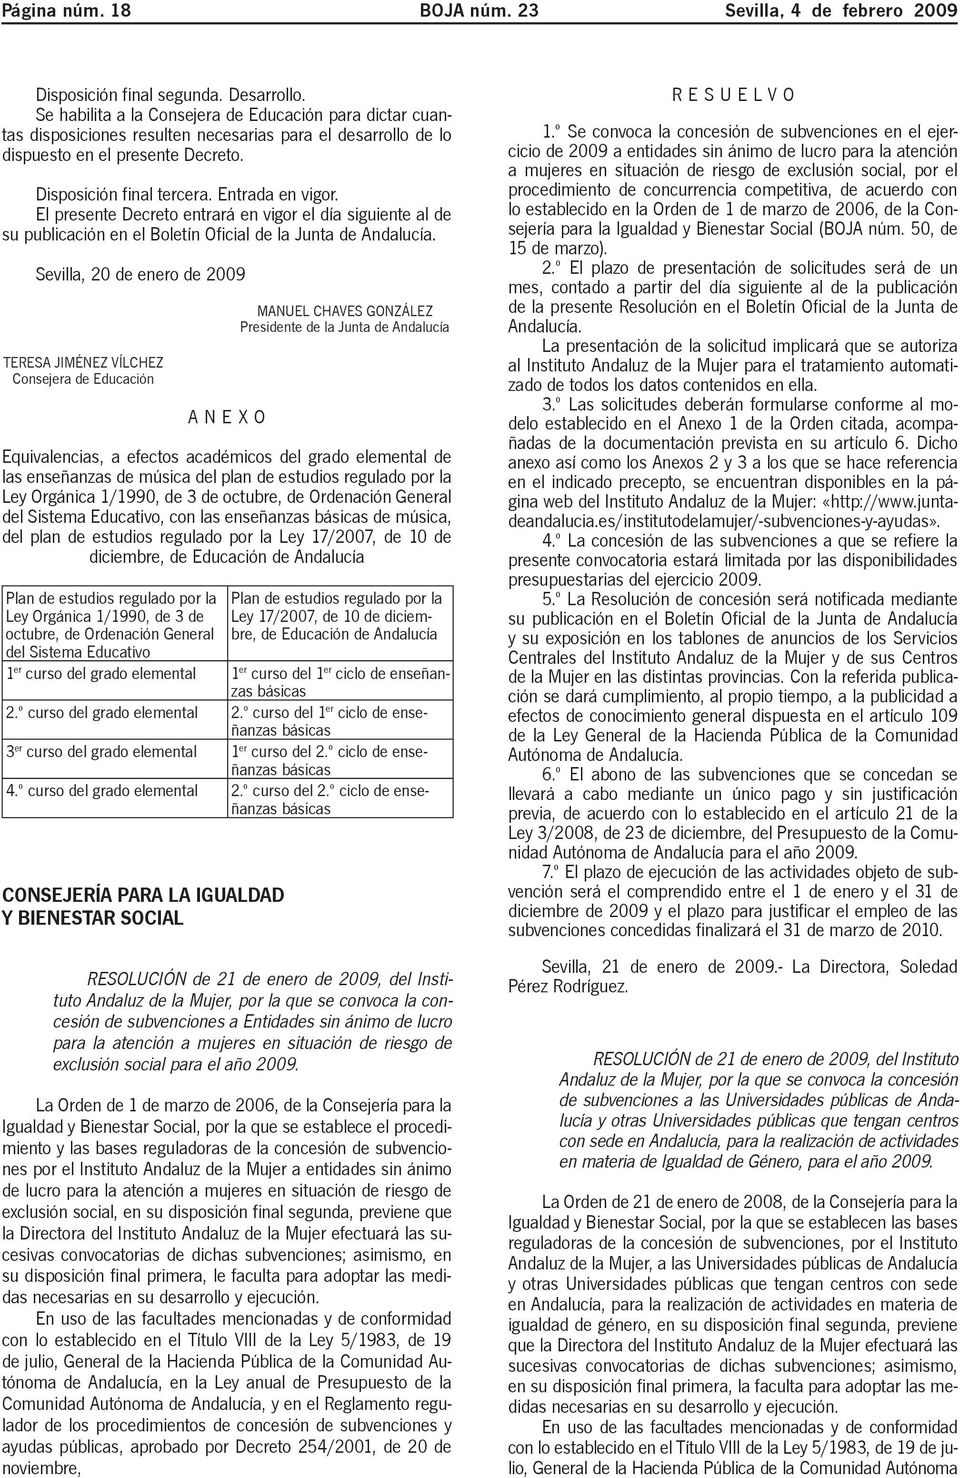 El presente Decreto entrará en vigor el día siguiente al de su publicación en el Boletín Oficial de la Junta de Andalucía.